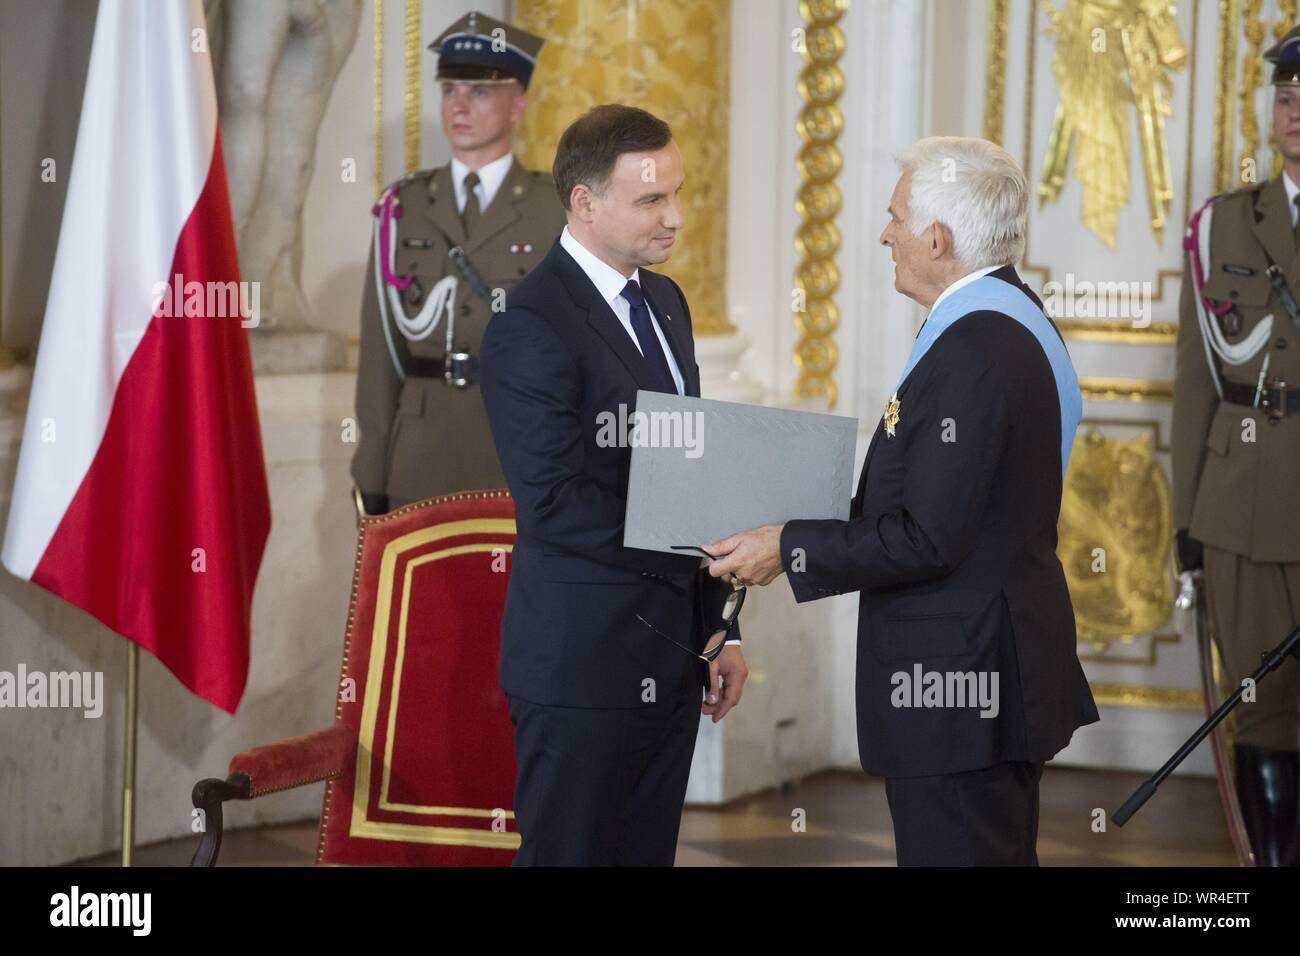 Il 6 agosto 2015 Varsavia, inaugurazione presidenziale in Polonia: Andrzej Duda prestato giuramento come nuovo presidente polacco. Ricevere le insegne di ordini presso il Royal Foto Stock